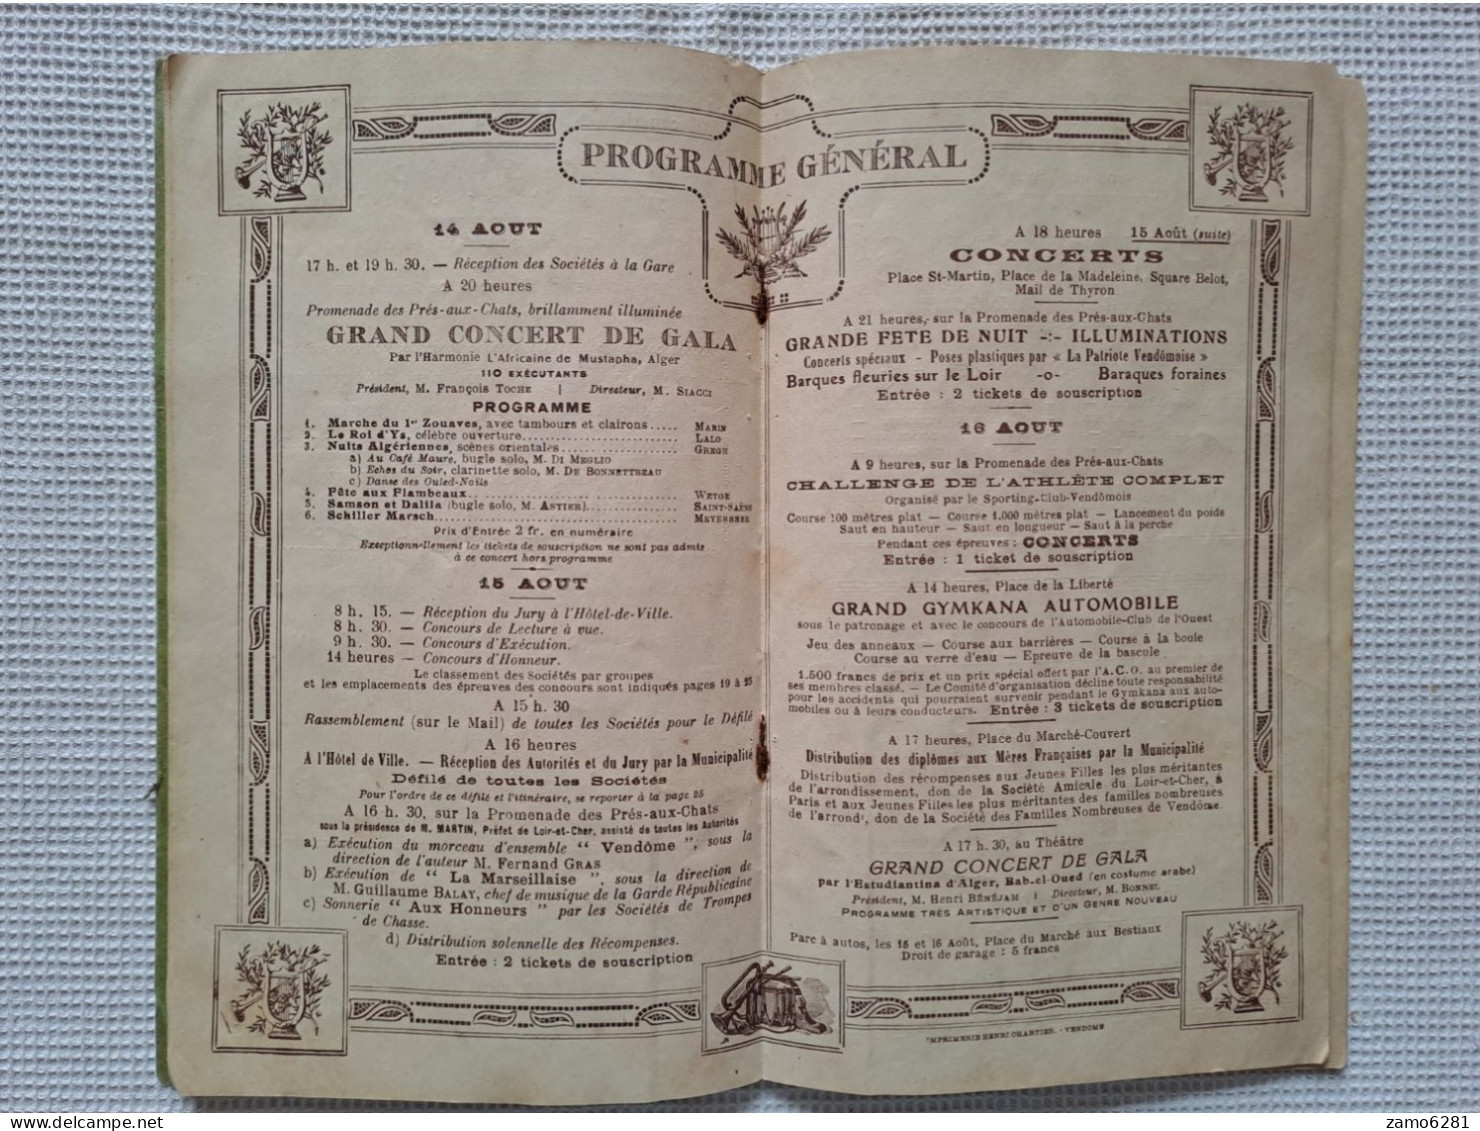 Grand concours national et international de Musique - Ville de Vendôme - 15 et 16 Aout 1926